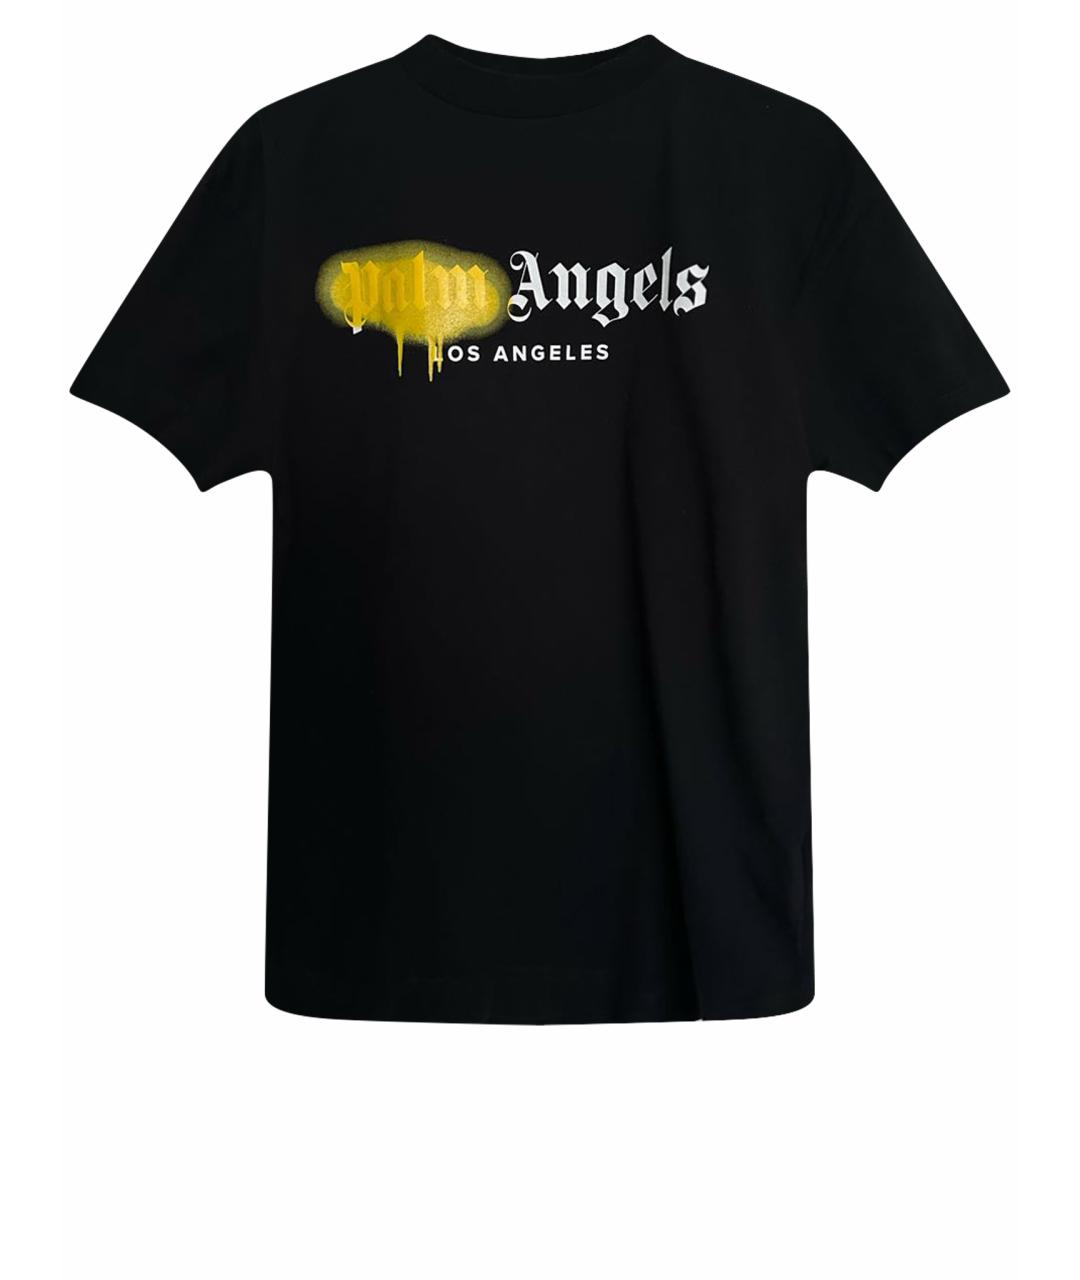 PALM ANGELS Черная хлопковая футболка, фото 1